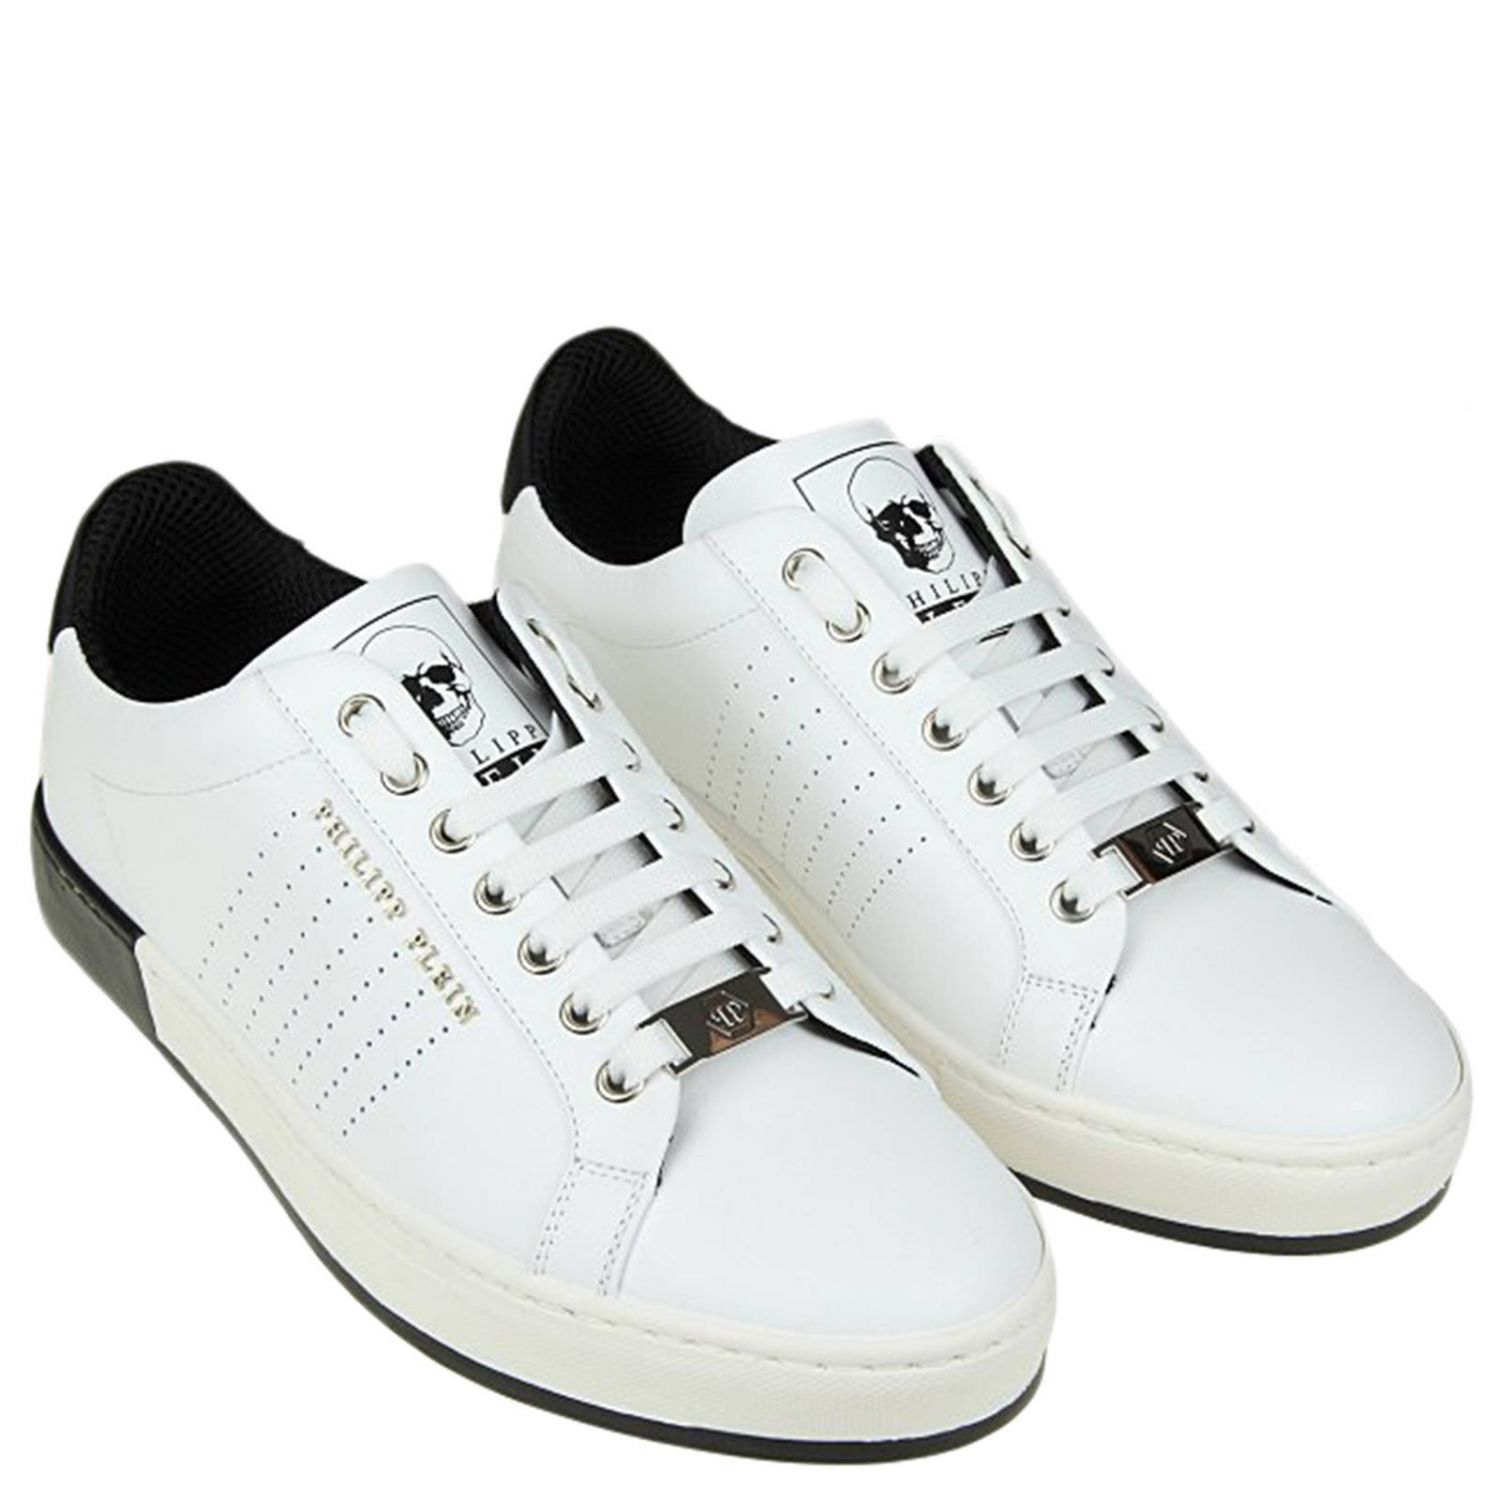 Philipp Plein Outlet: Brogue shoes men | Sneakers Philipp Plein Men ...